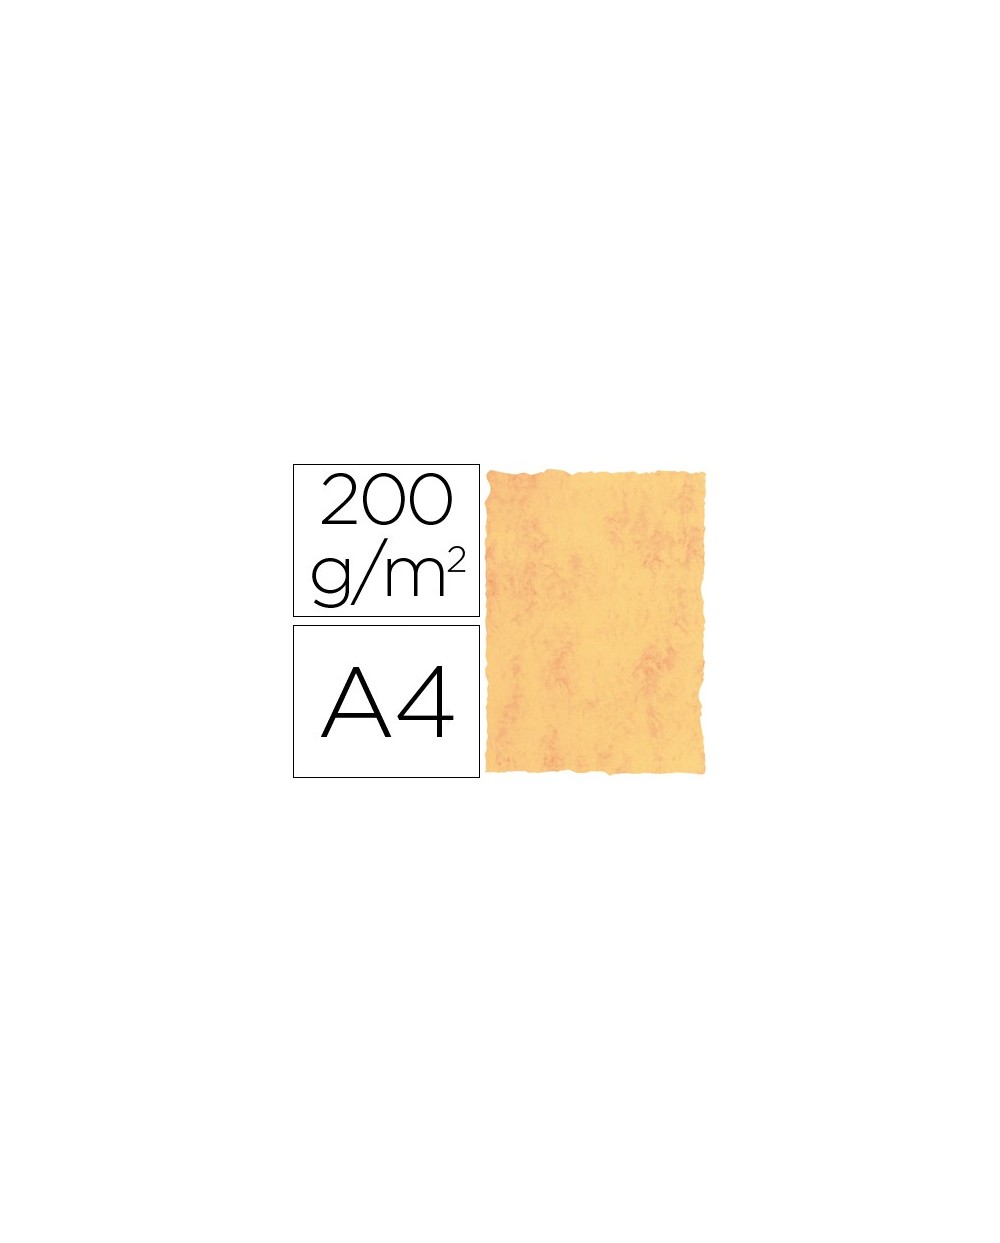 Papel pergamino din a4 200 gr color marmol amarillo paquete de 25 hojas